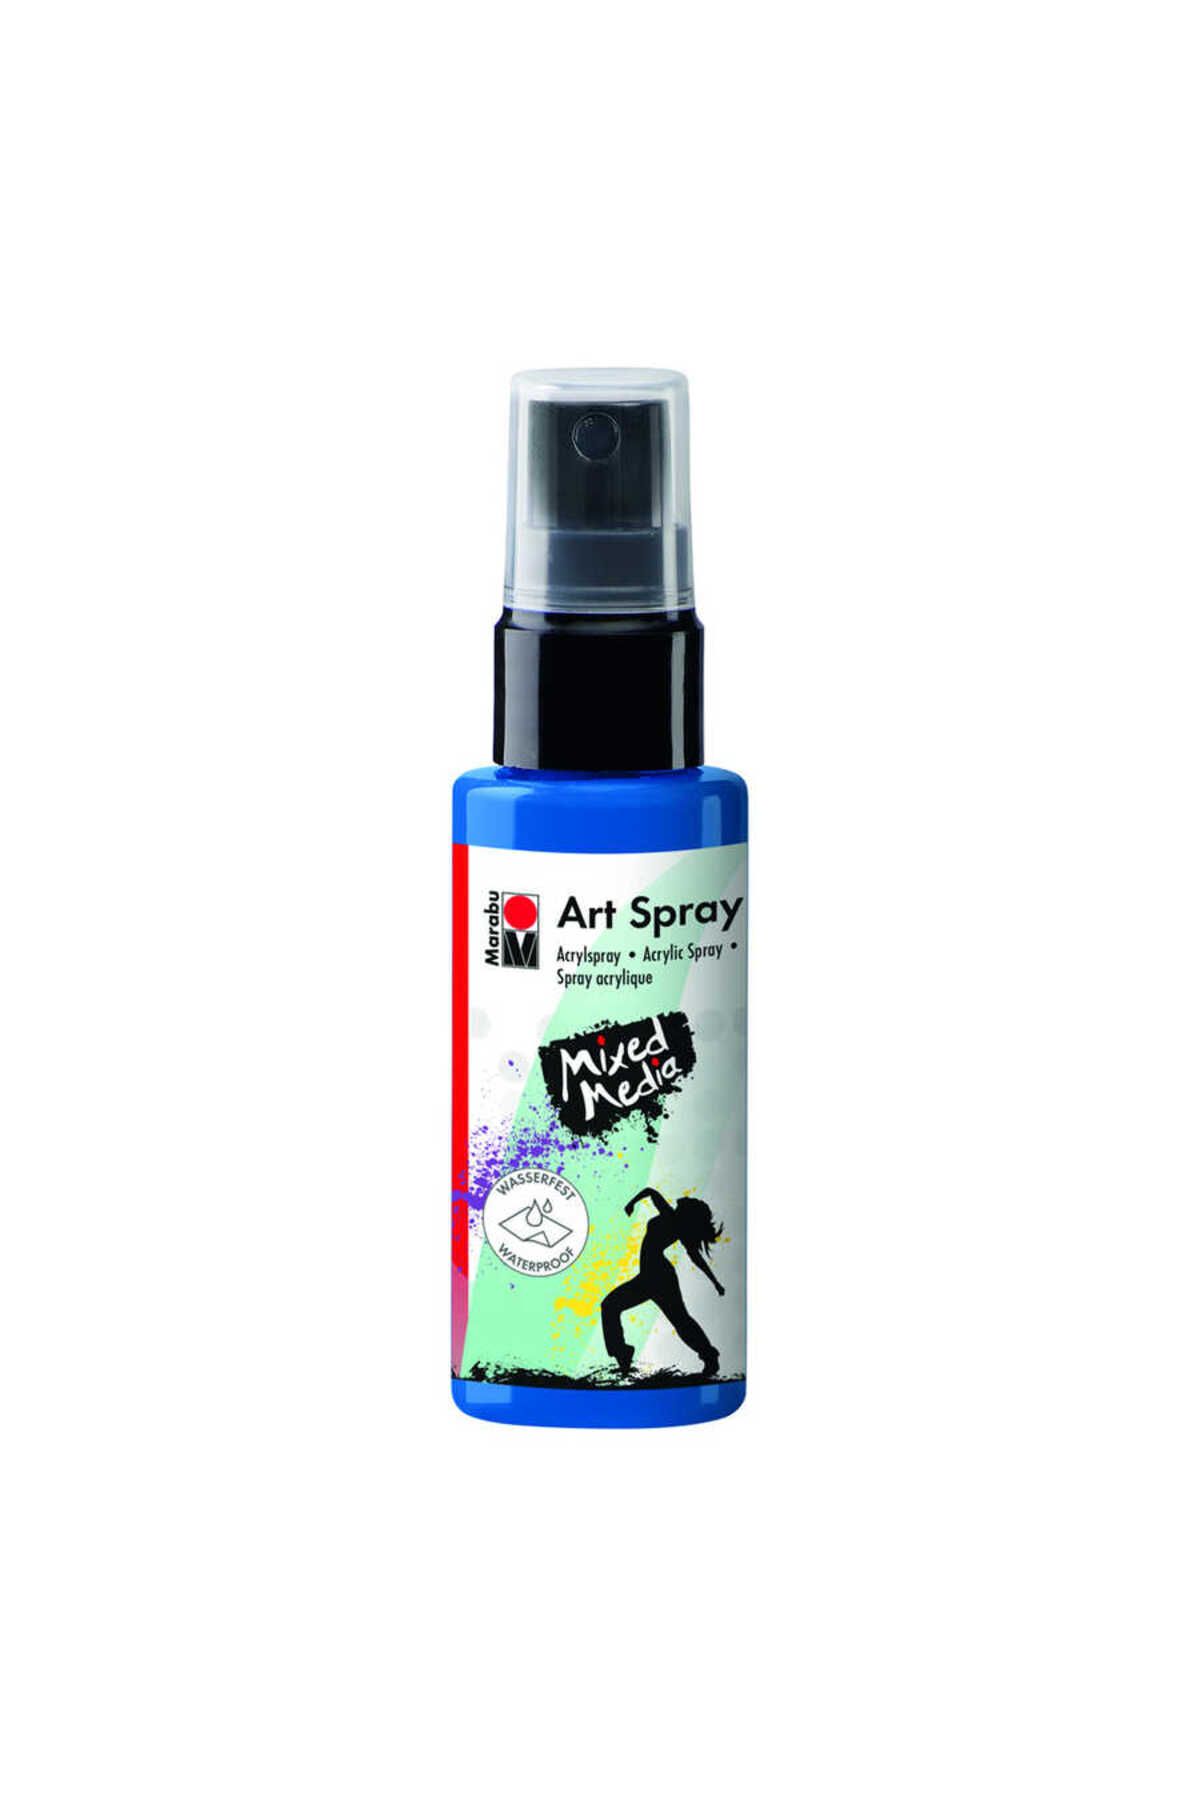 Marabu Art Spray 50ml Gentian